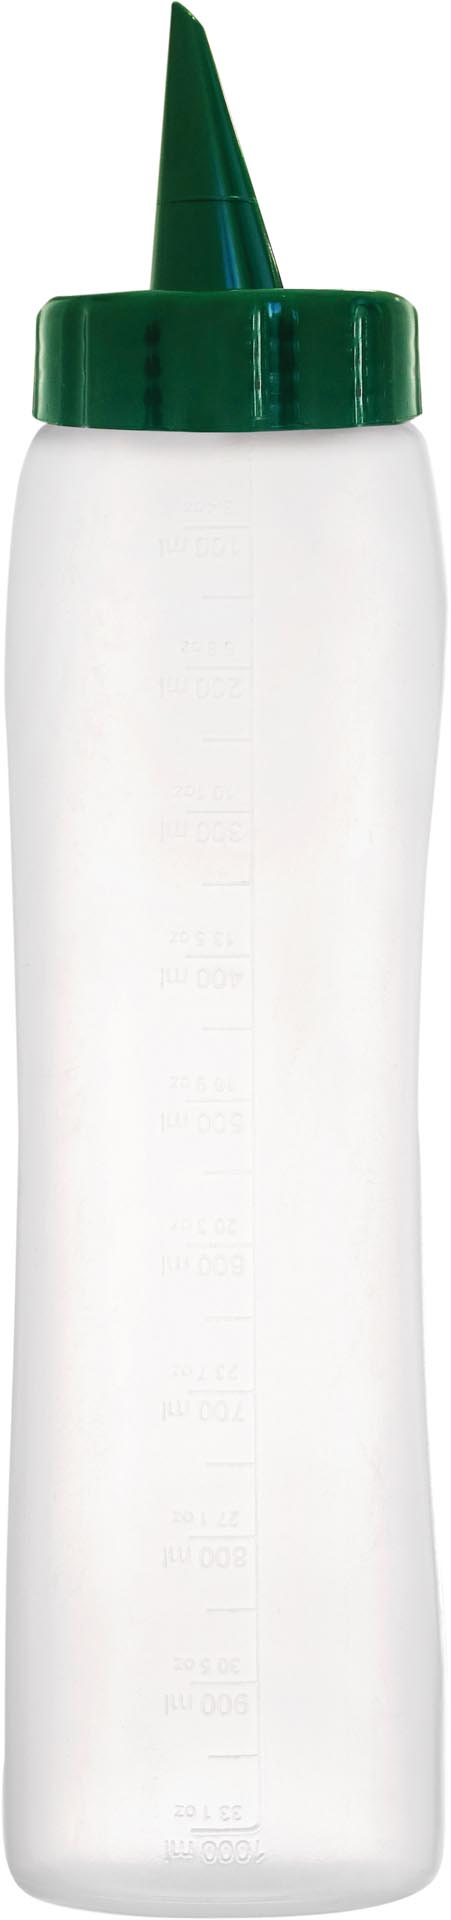 Dosierflasche, klar, Polyethylen 1,0 Liter